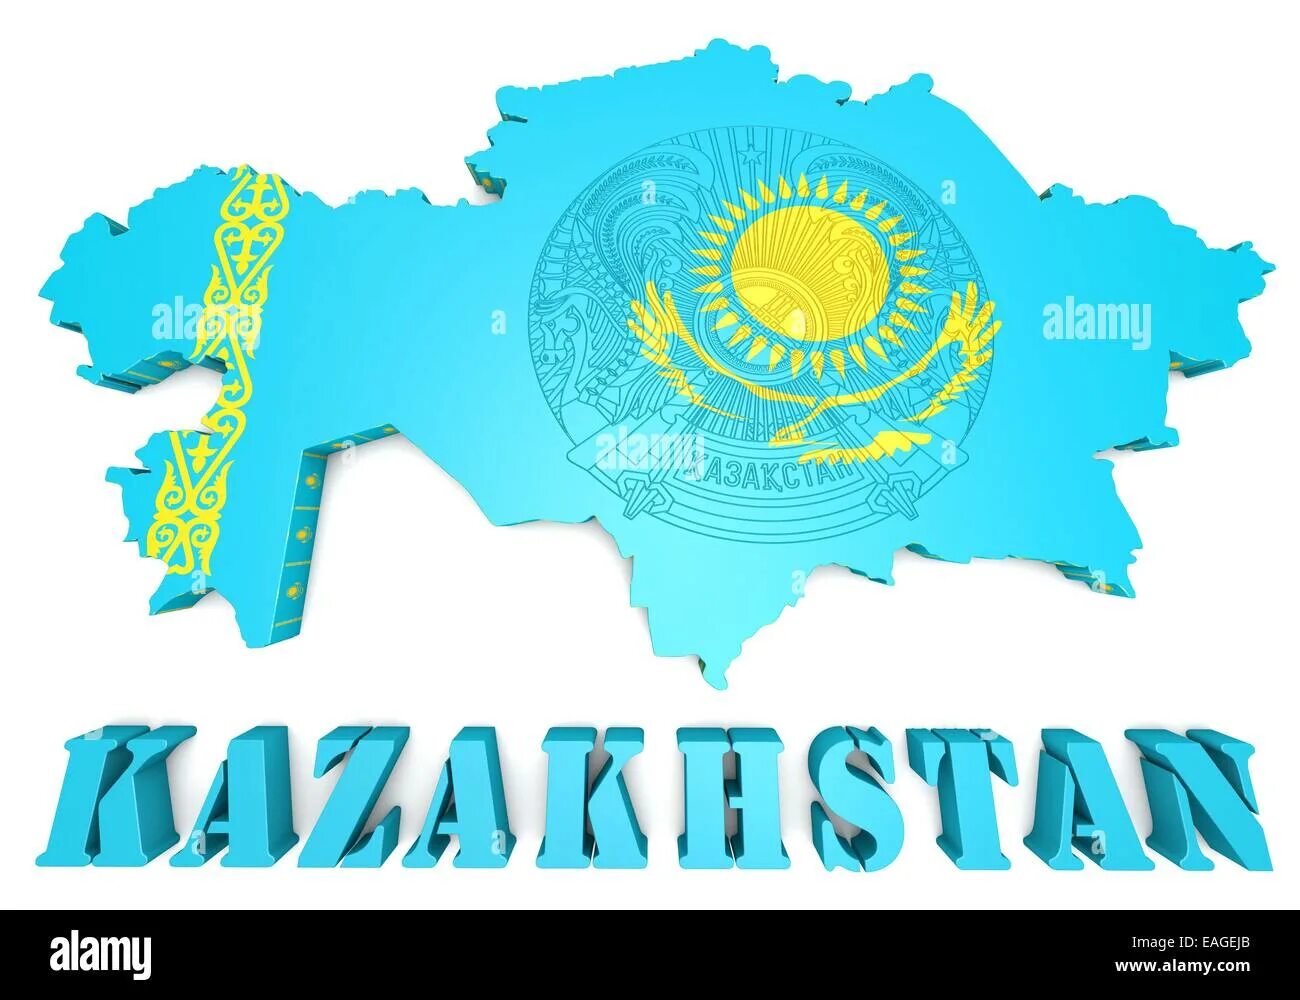 Казахстан надпись. Казахстан вектор. Казахстан надпись красивая. Флаг Казахстана с надписью Казахстан.